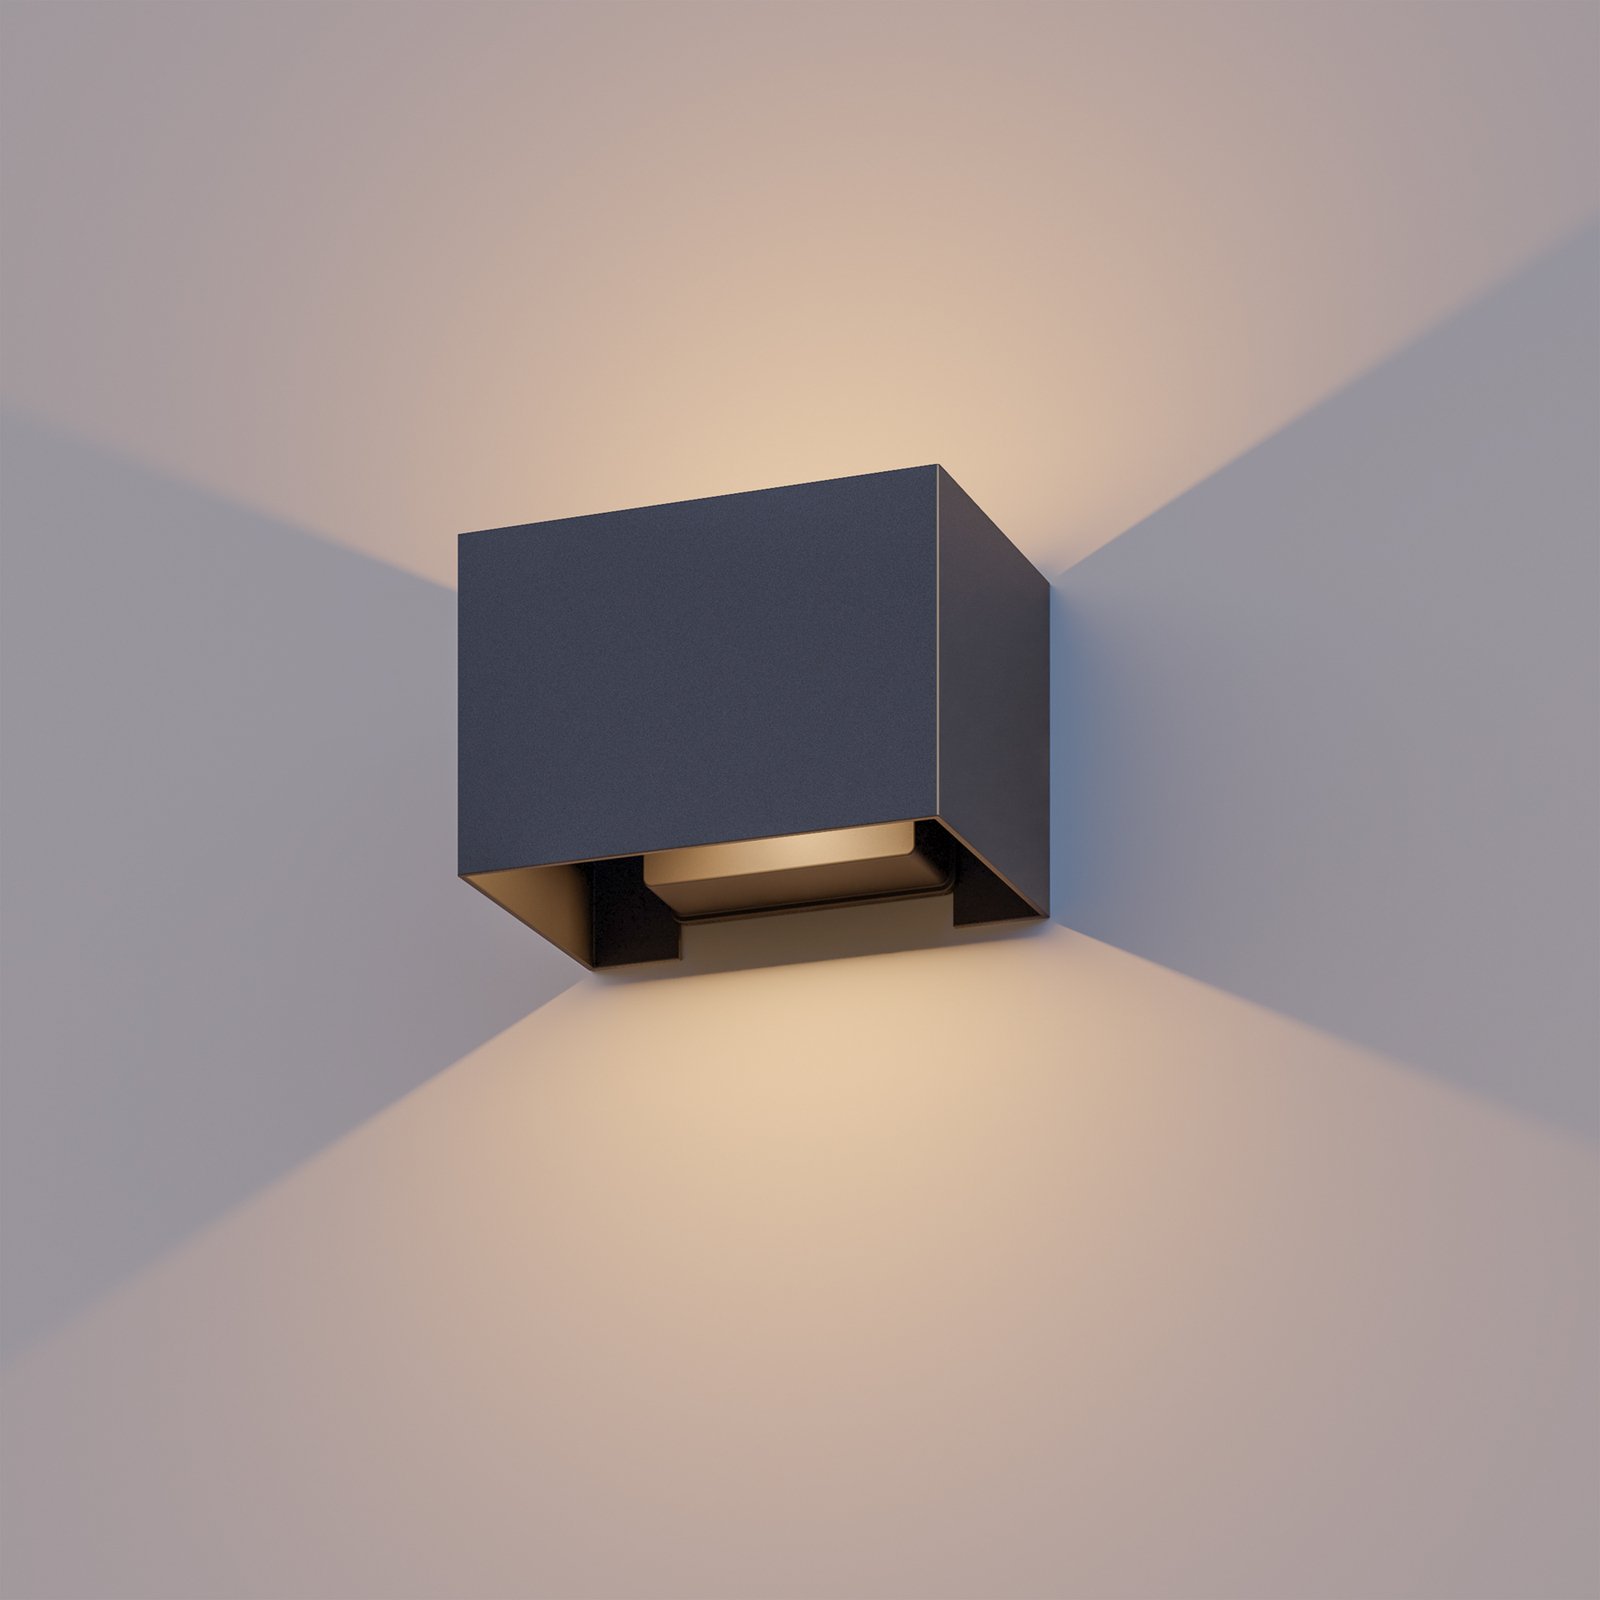 Venkovní nástěnné svítidlo Calex Obdélník nahoru/dolů, výška 10 cm, černá